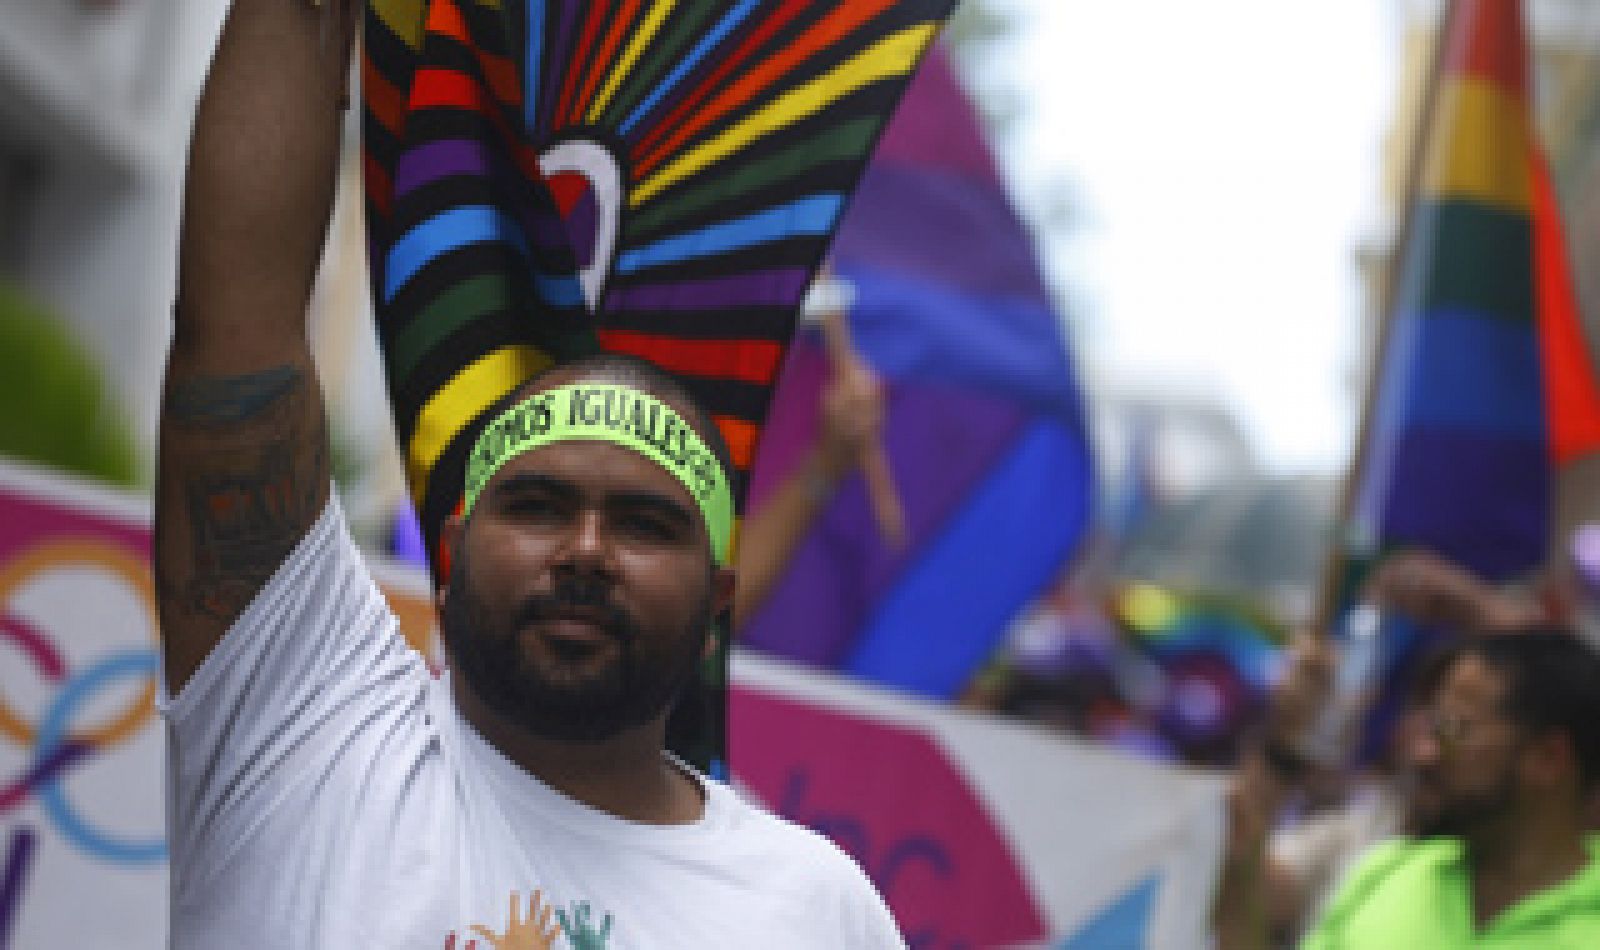 La homosexualidad sigue siendo delito en 75 países y en siete de ellos castigado con pena de muerte